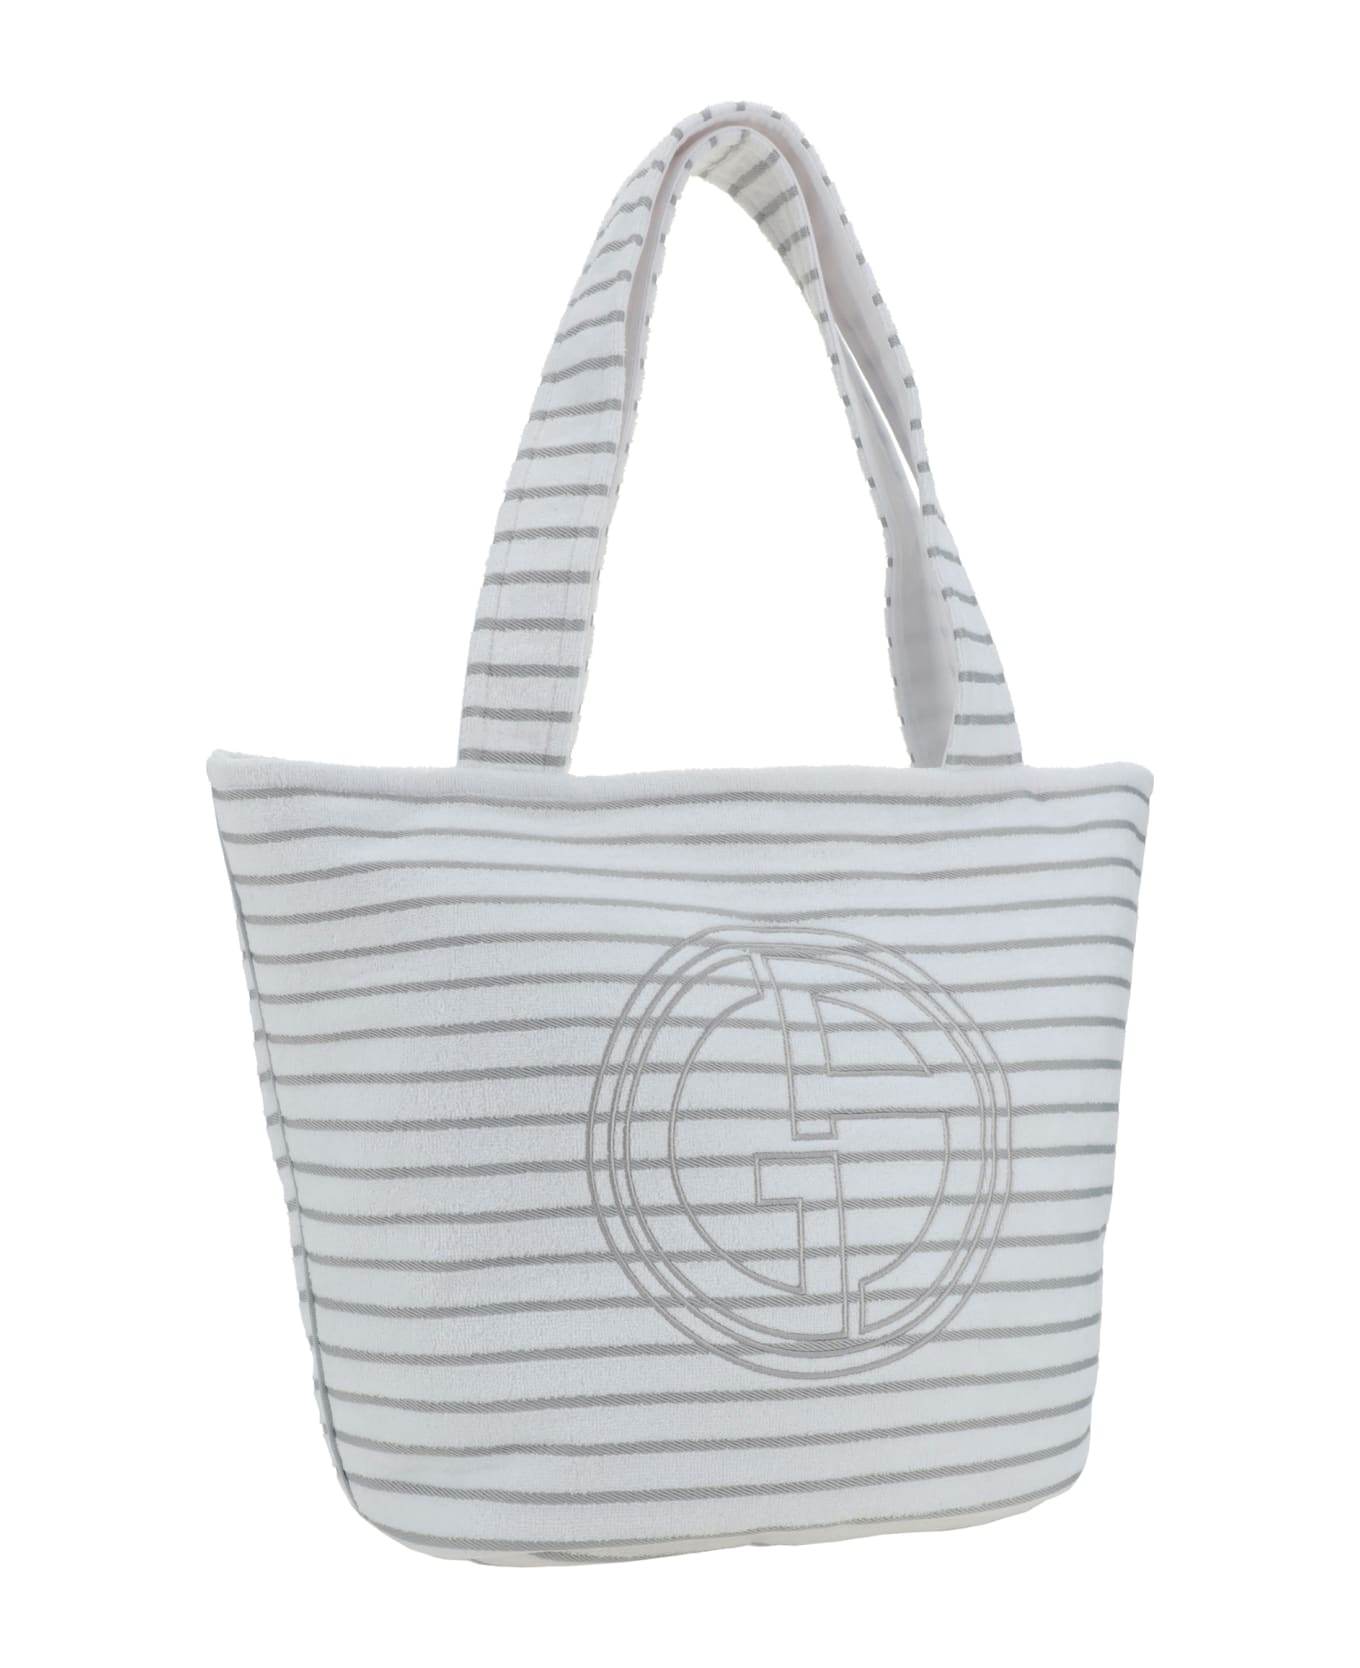 Giorgio Armani Shoulder Bag - Brilliant White